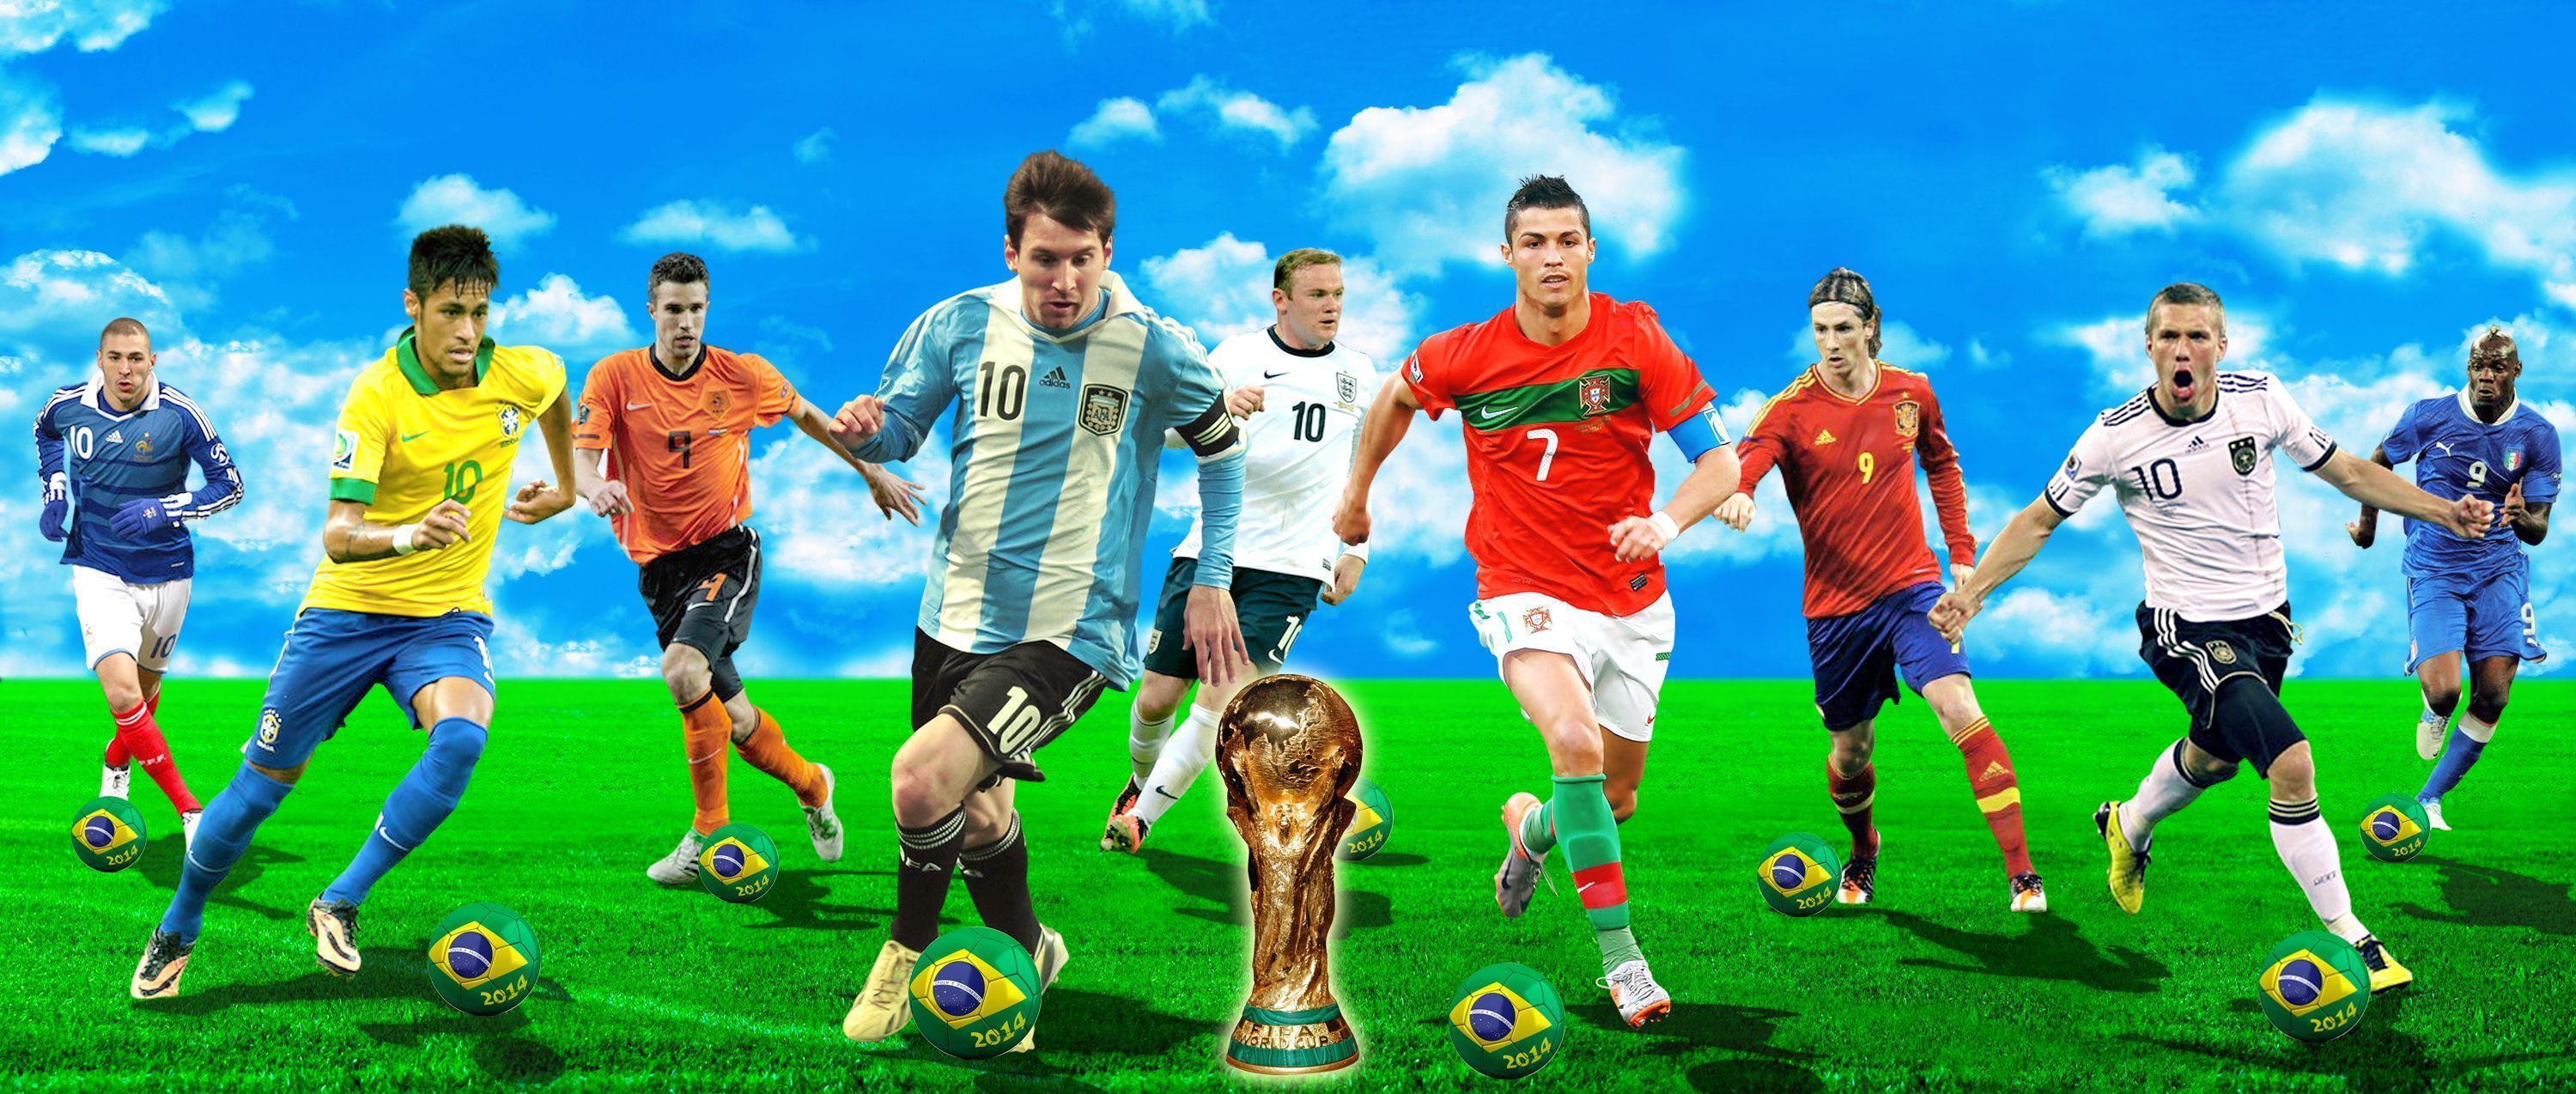 Best Soccer Players Wallpaper